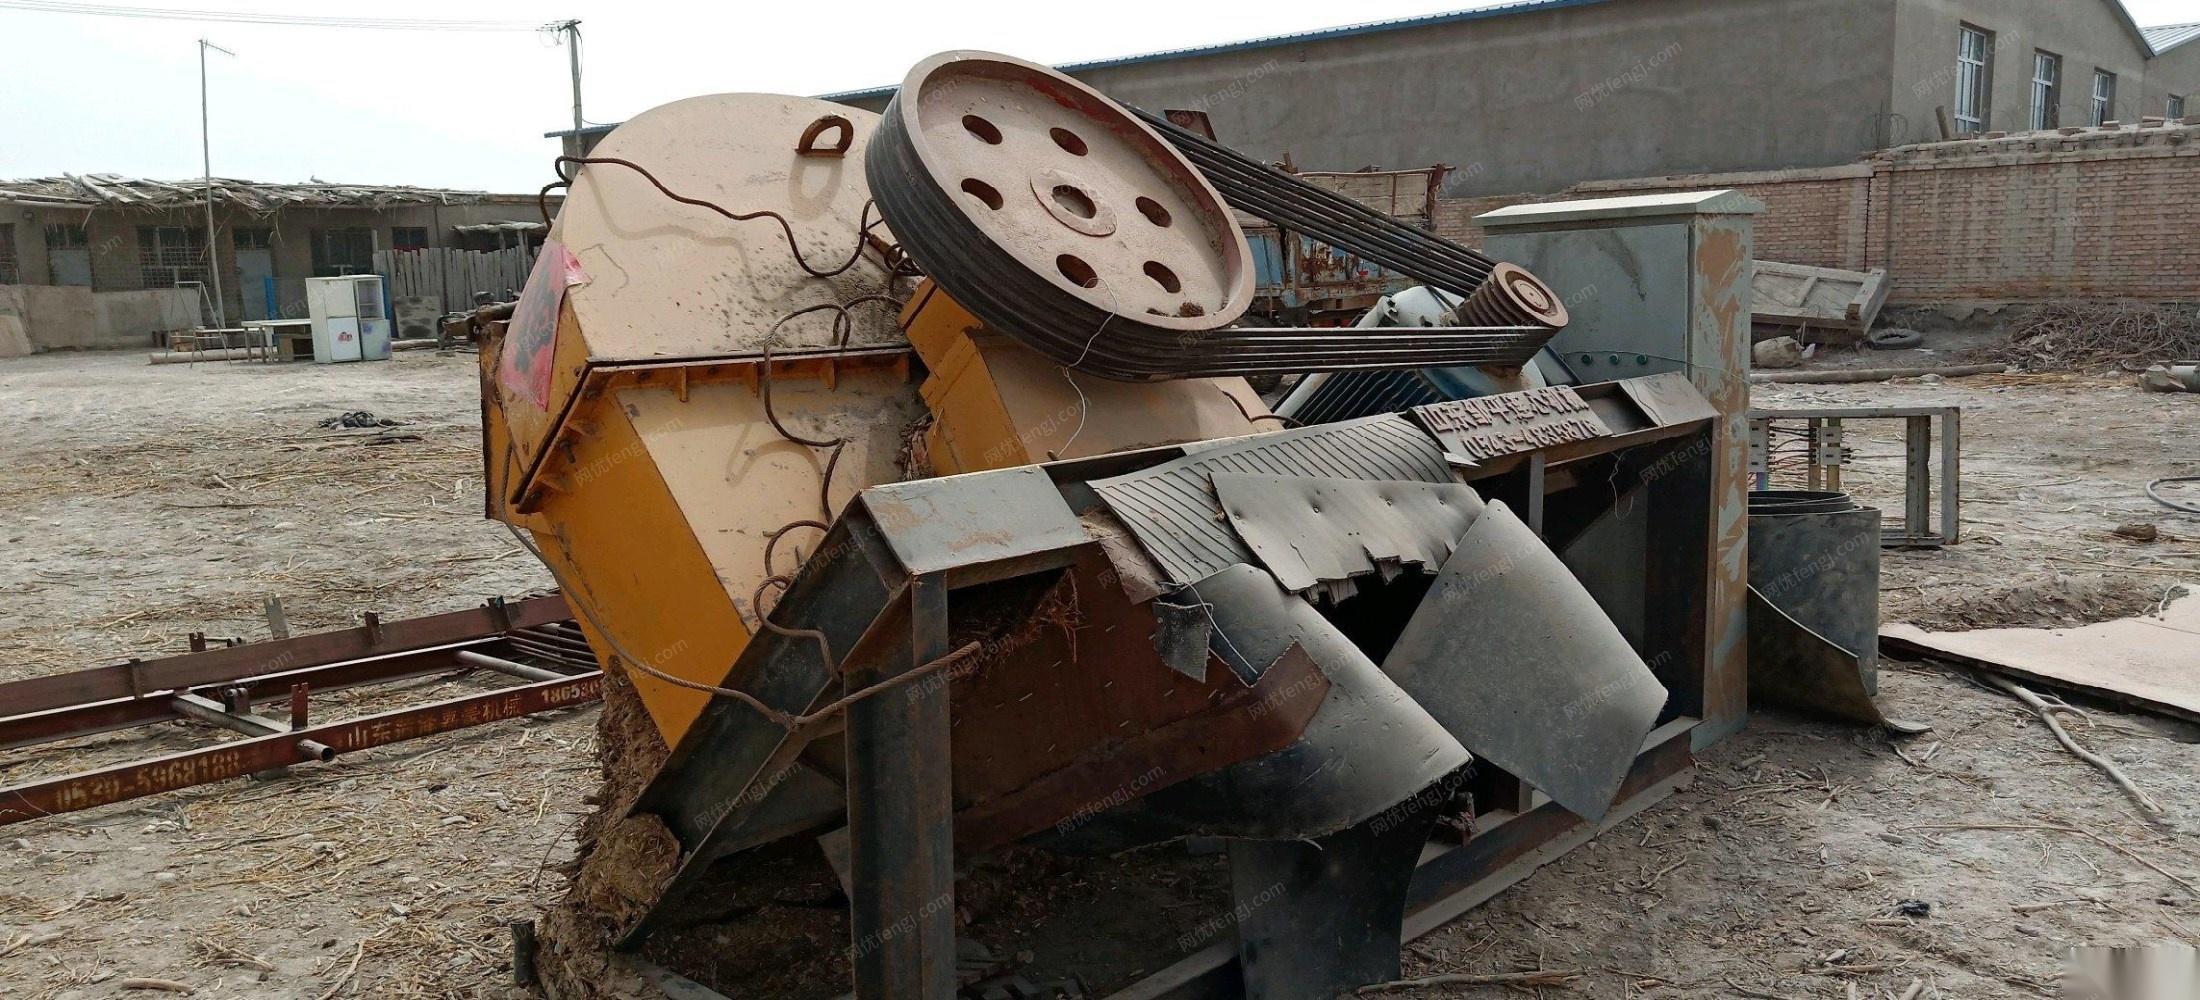 新疆塔城出售木材大型粉碎机 45000元